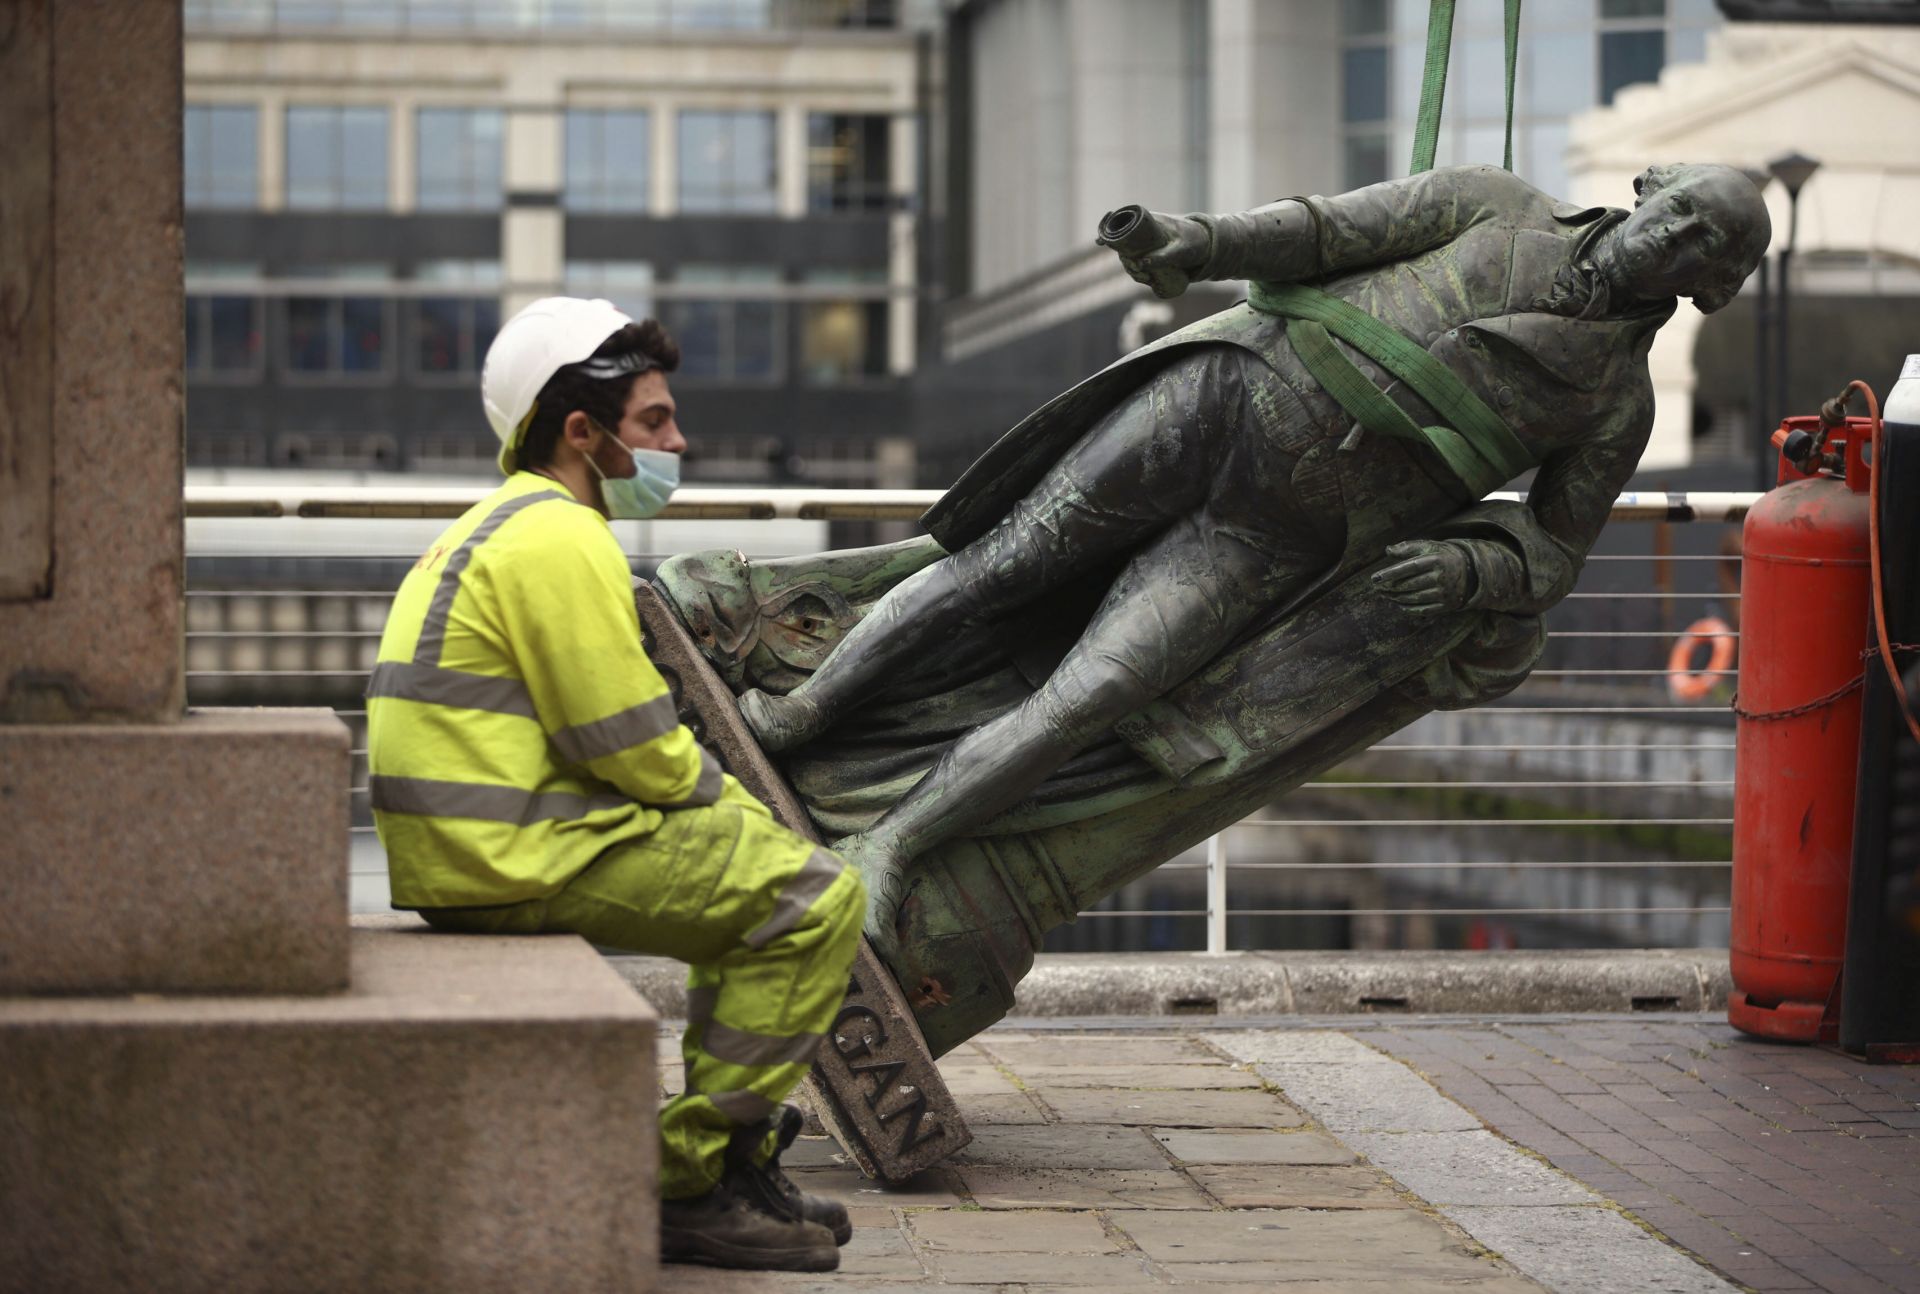 Статуята на търговеца на роби от 18 век Робърт Мълиган беше свалена от постамента пред музей в лондонския квартал "Докландс